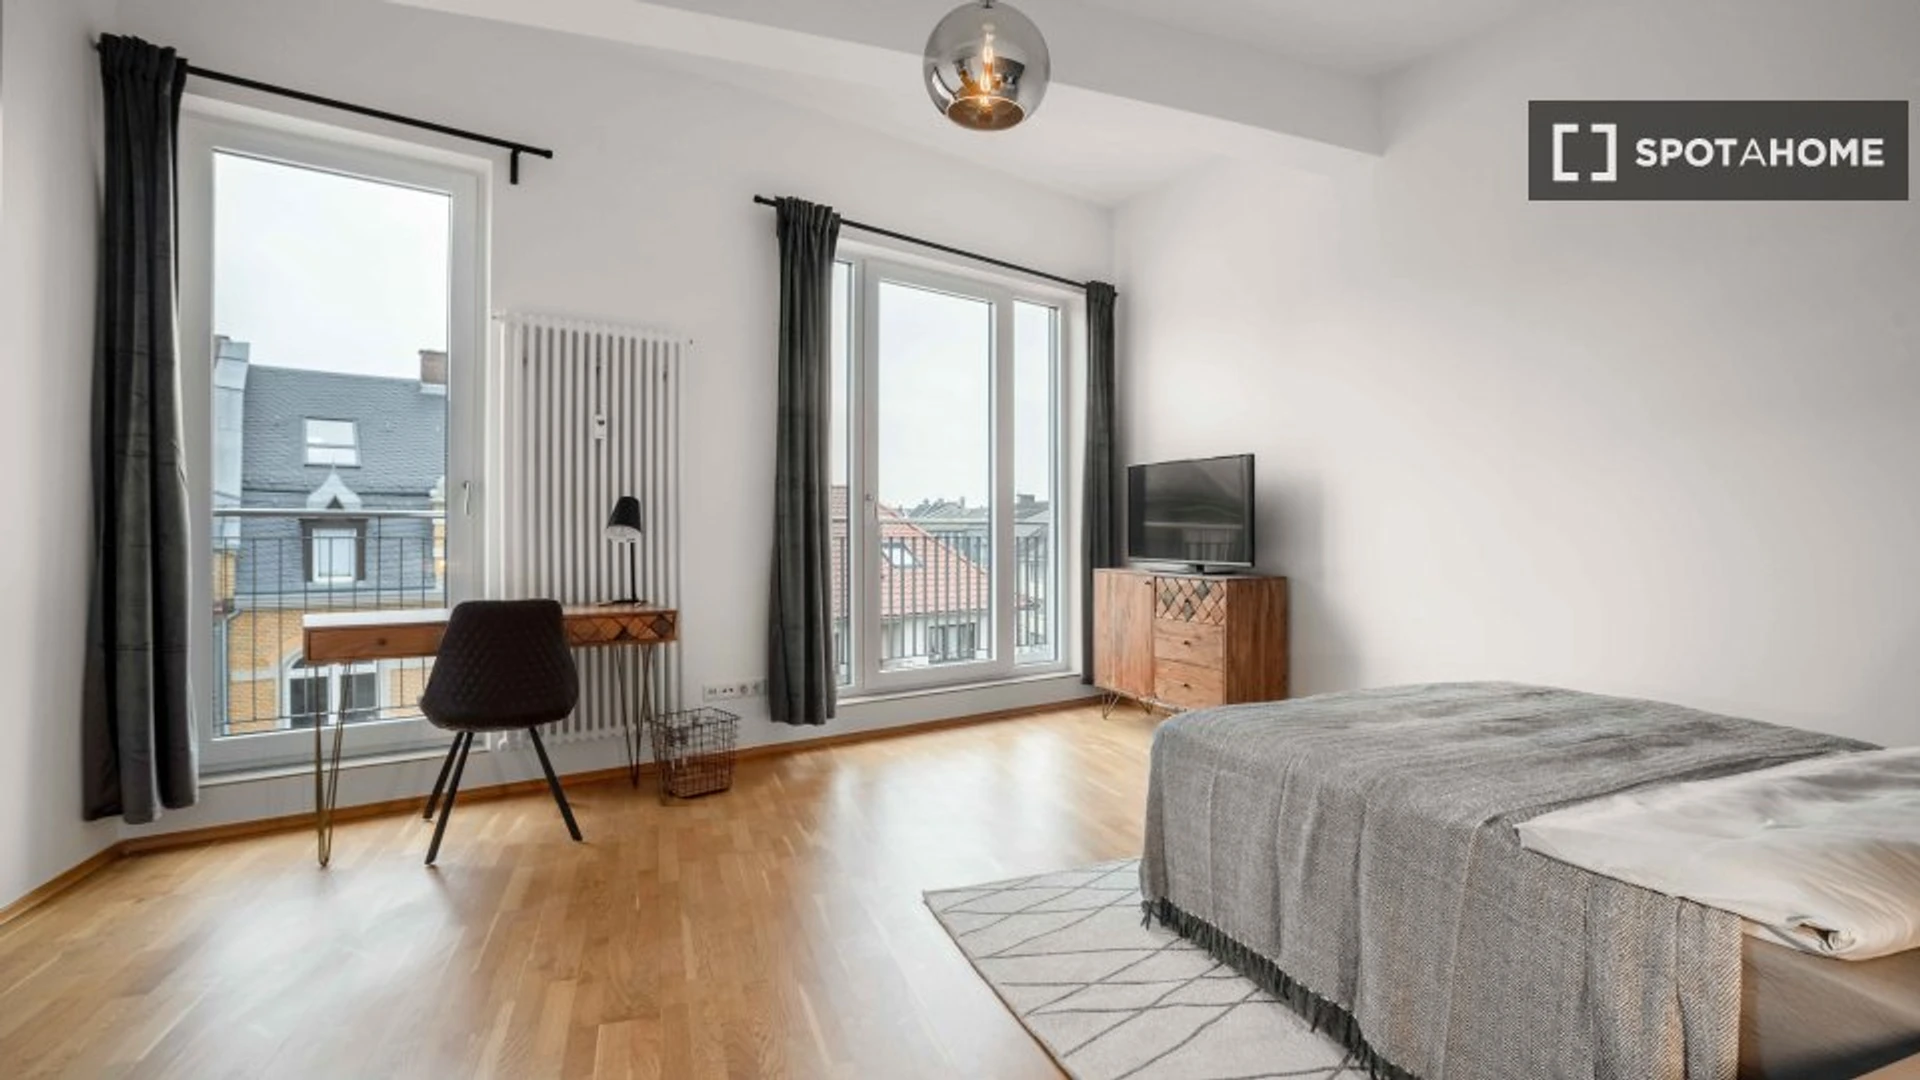 Pokój do wynajęcia z podwójnym łóżkiem w Frankfurt